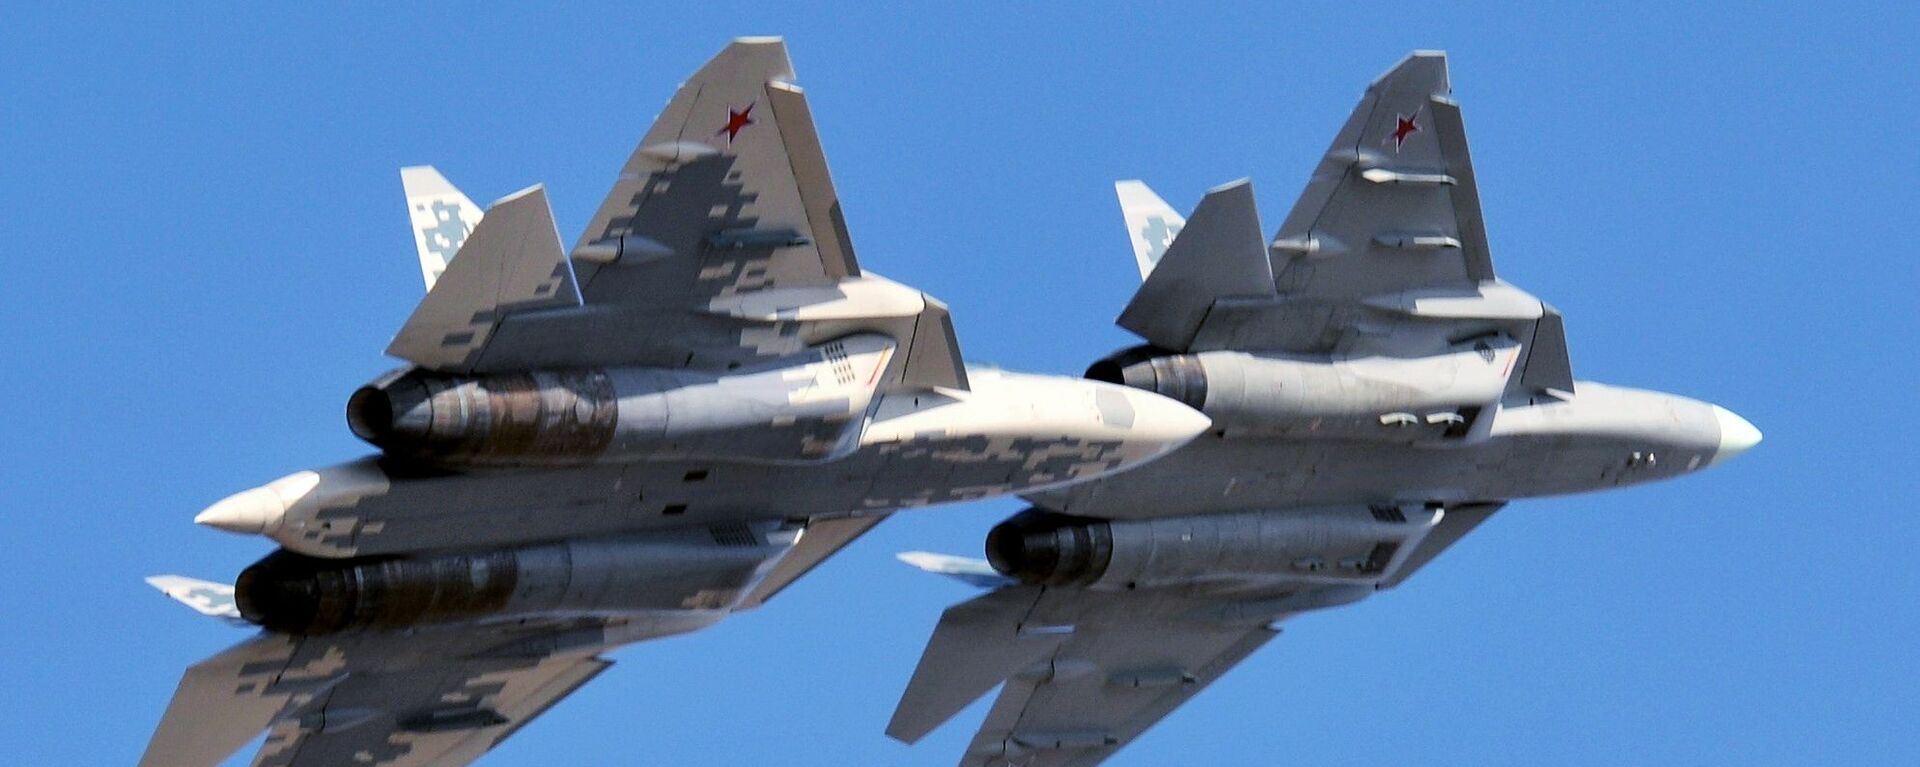 روسیه نوع جدیدی از جنگنده نسل پنجمی سوخو-57 را می سازد - اسپوتنیک ایران  , 1920, 27.07.2021